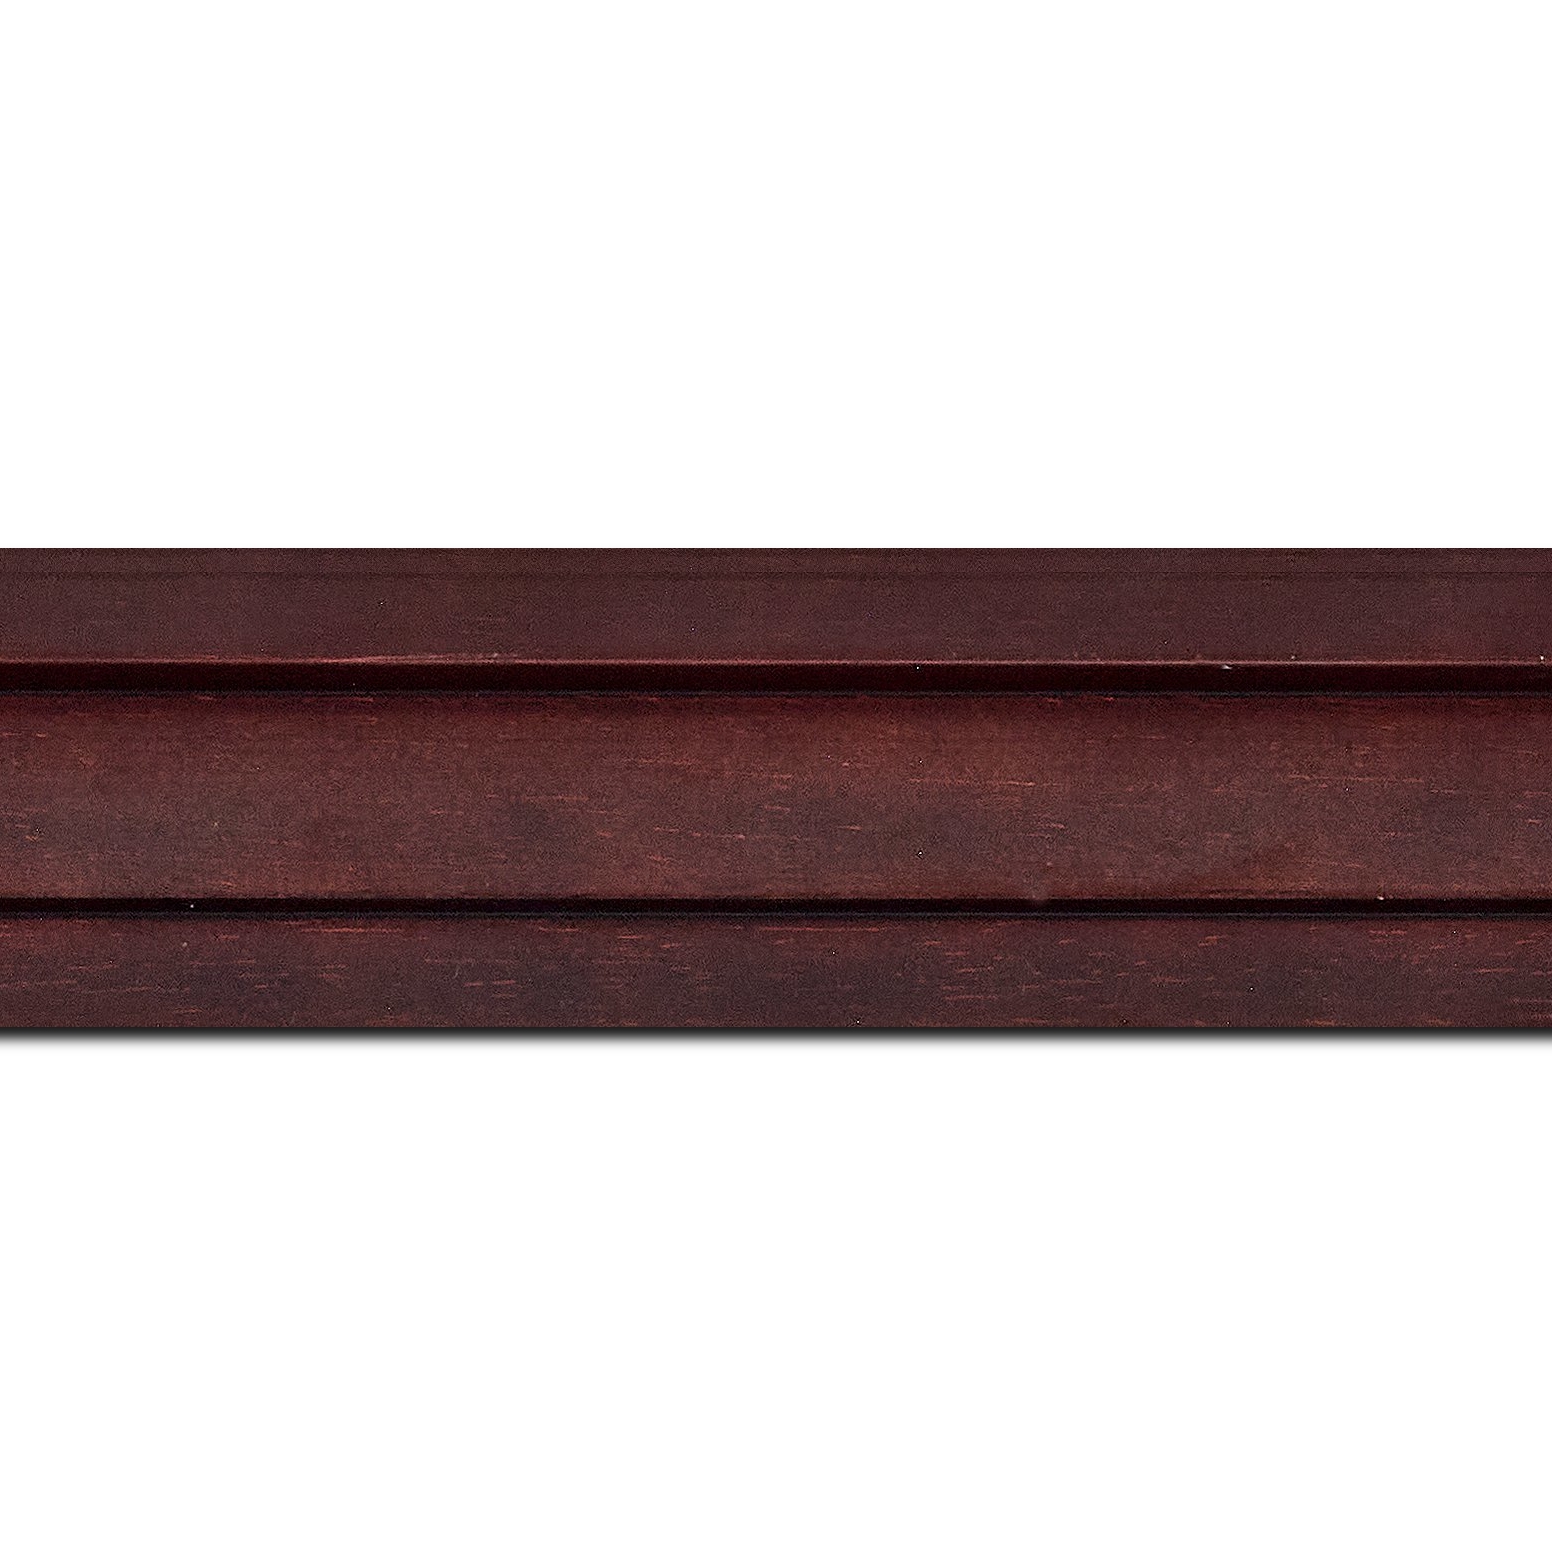 Pack par 12m, bois caisse américaine profil escalier largeur 4.4cm chocolat satiné (spécialement conçu pour les châssis d'une épaisseur jusqu’à 2.5cm )(longueur baguette pouvant varier entre 2.40m et 3m selon arrivage des bois)